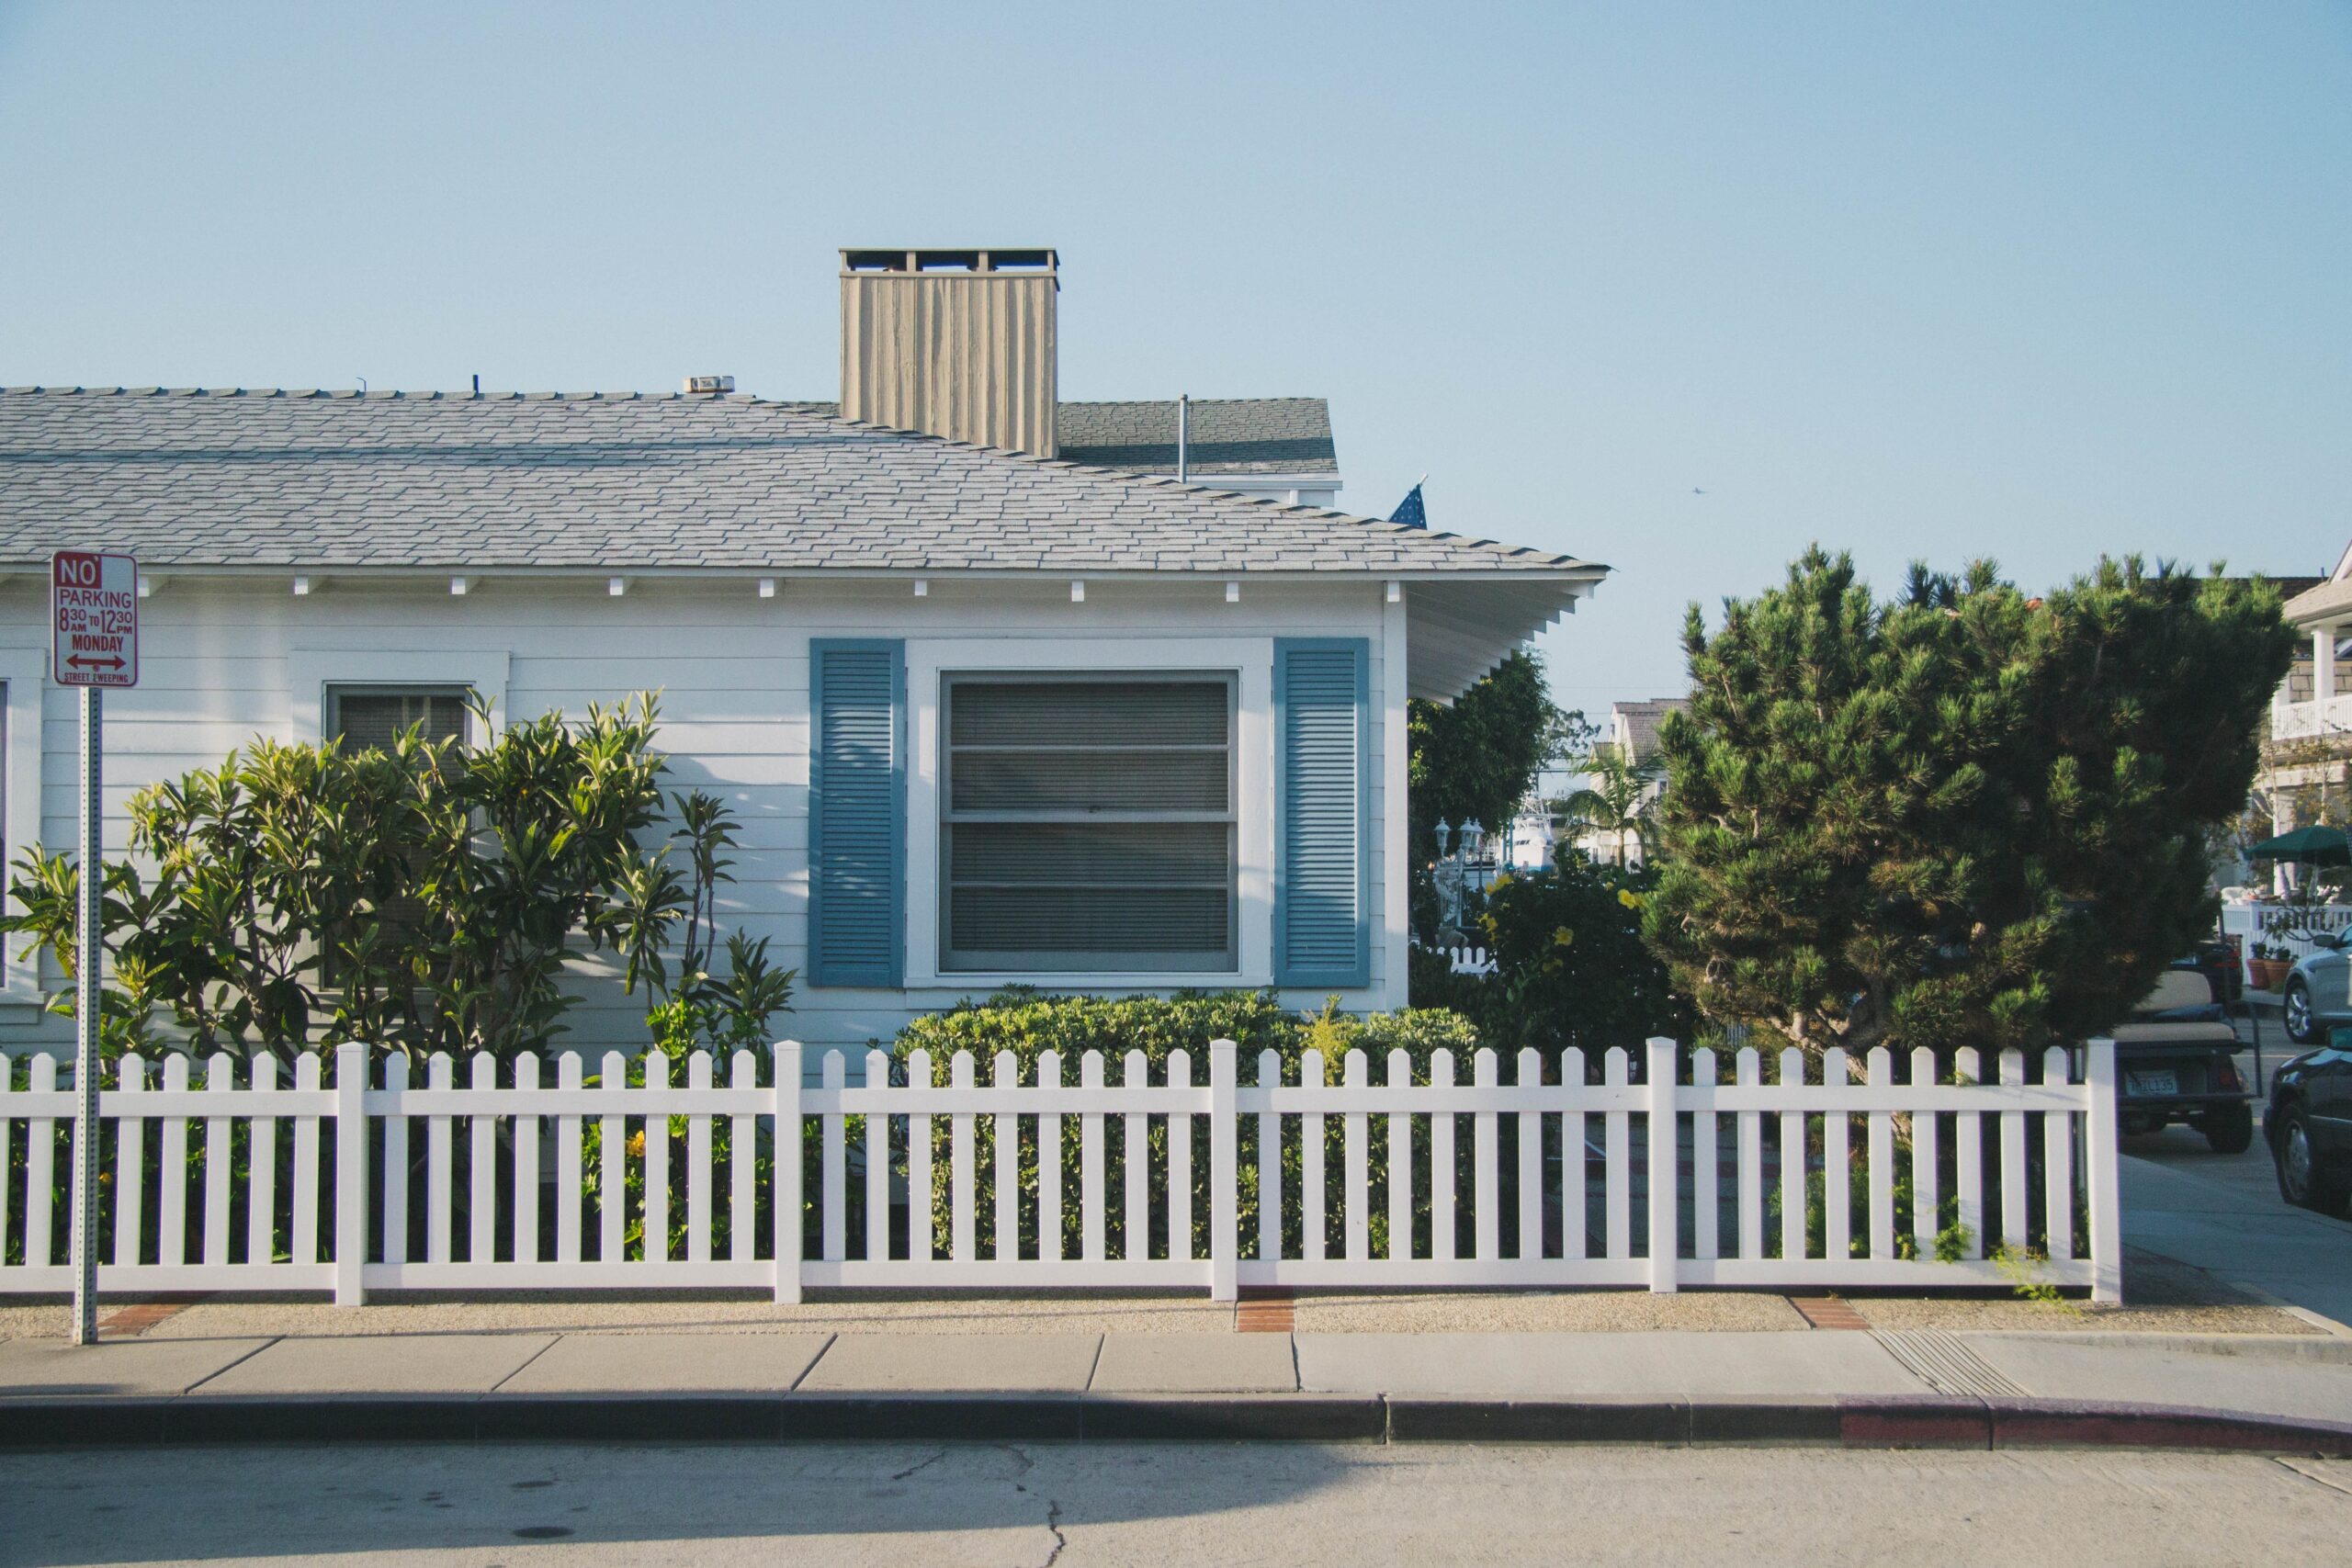 House in Balboa Island, Newport Beach, United States